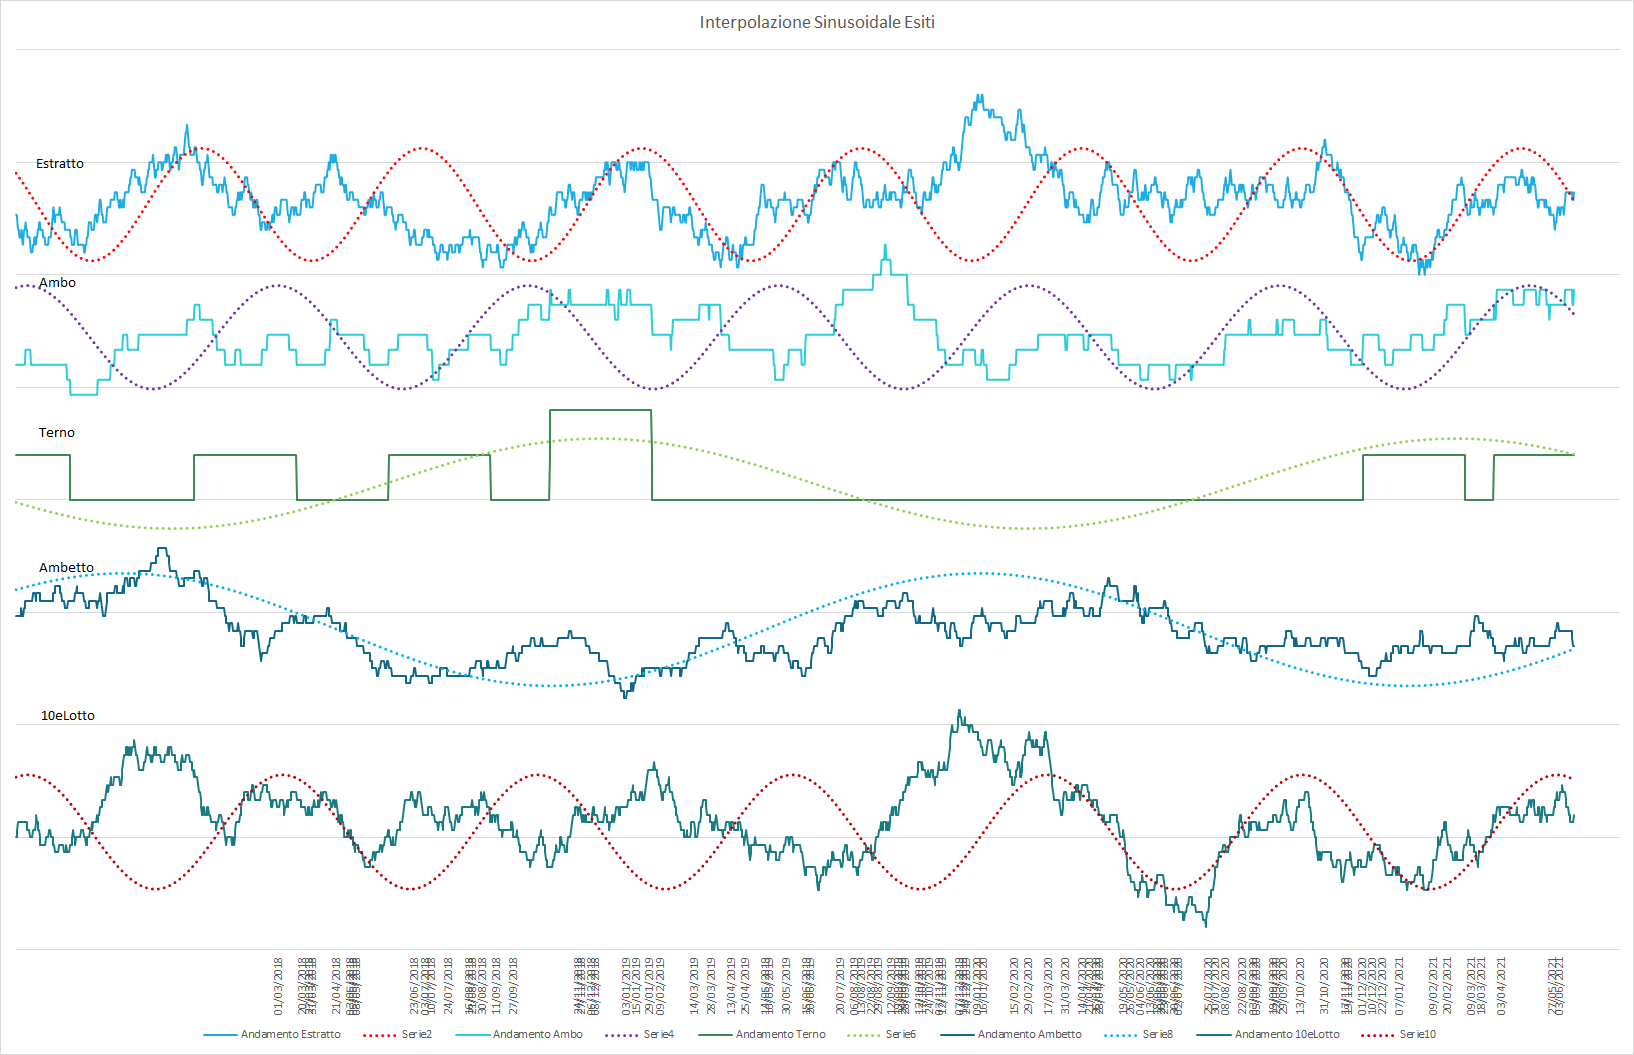 Ipotetico andamento sinusoidale interpolante per le medie delle varie sortite - Aggiornato all'estrazione precedente il 15 Giugno 2021